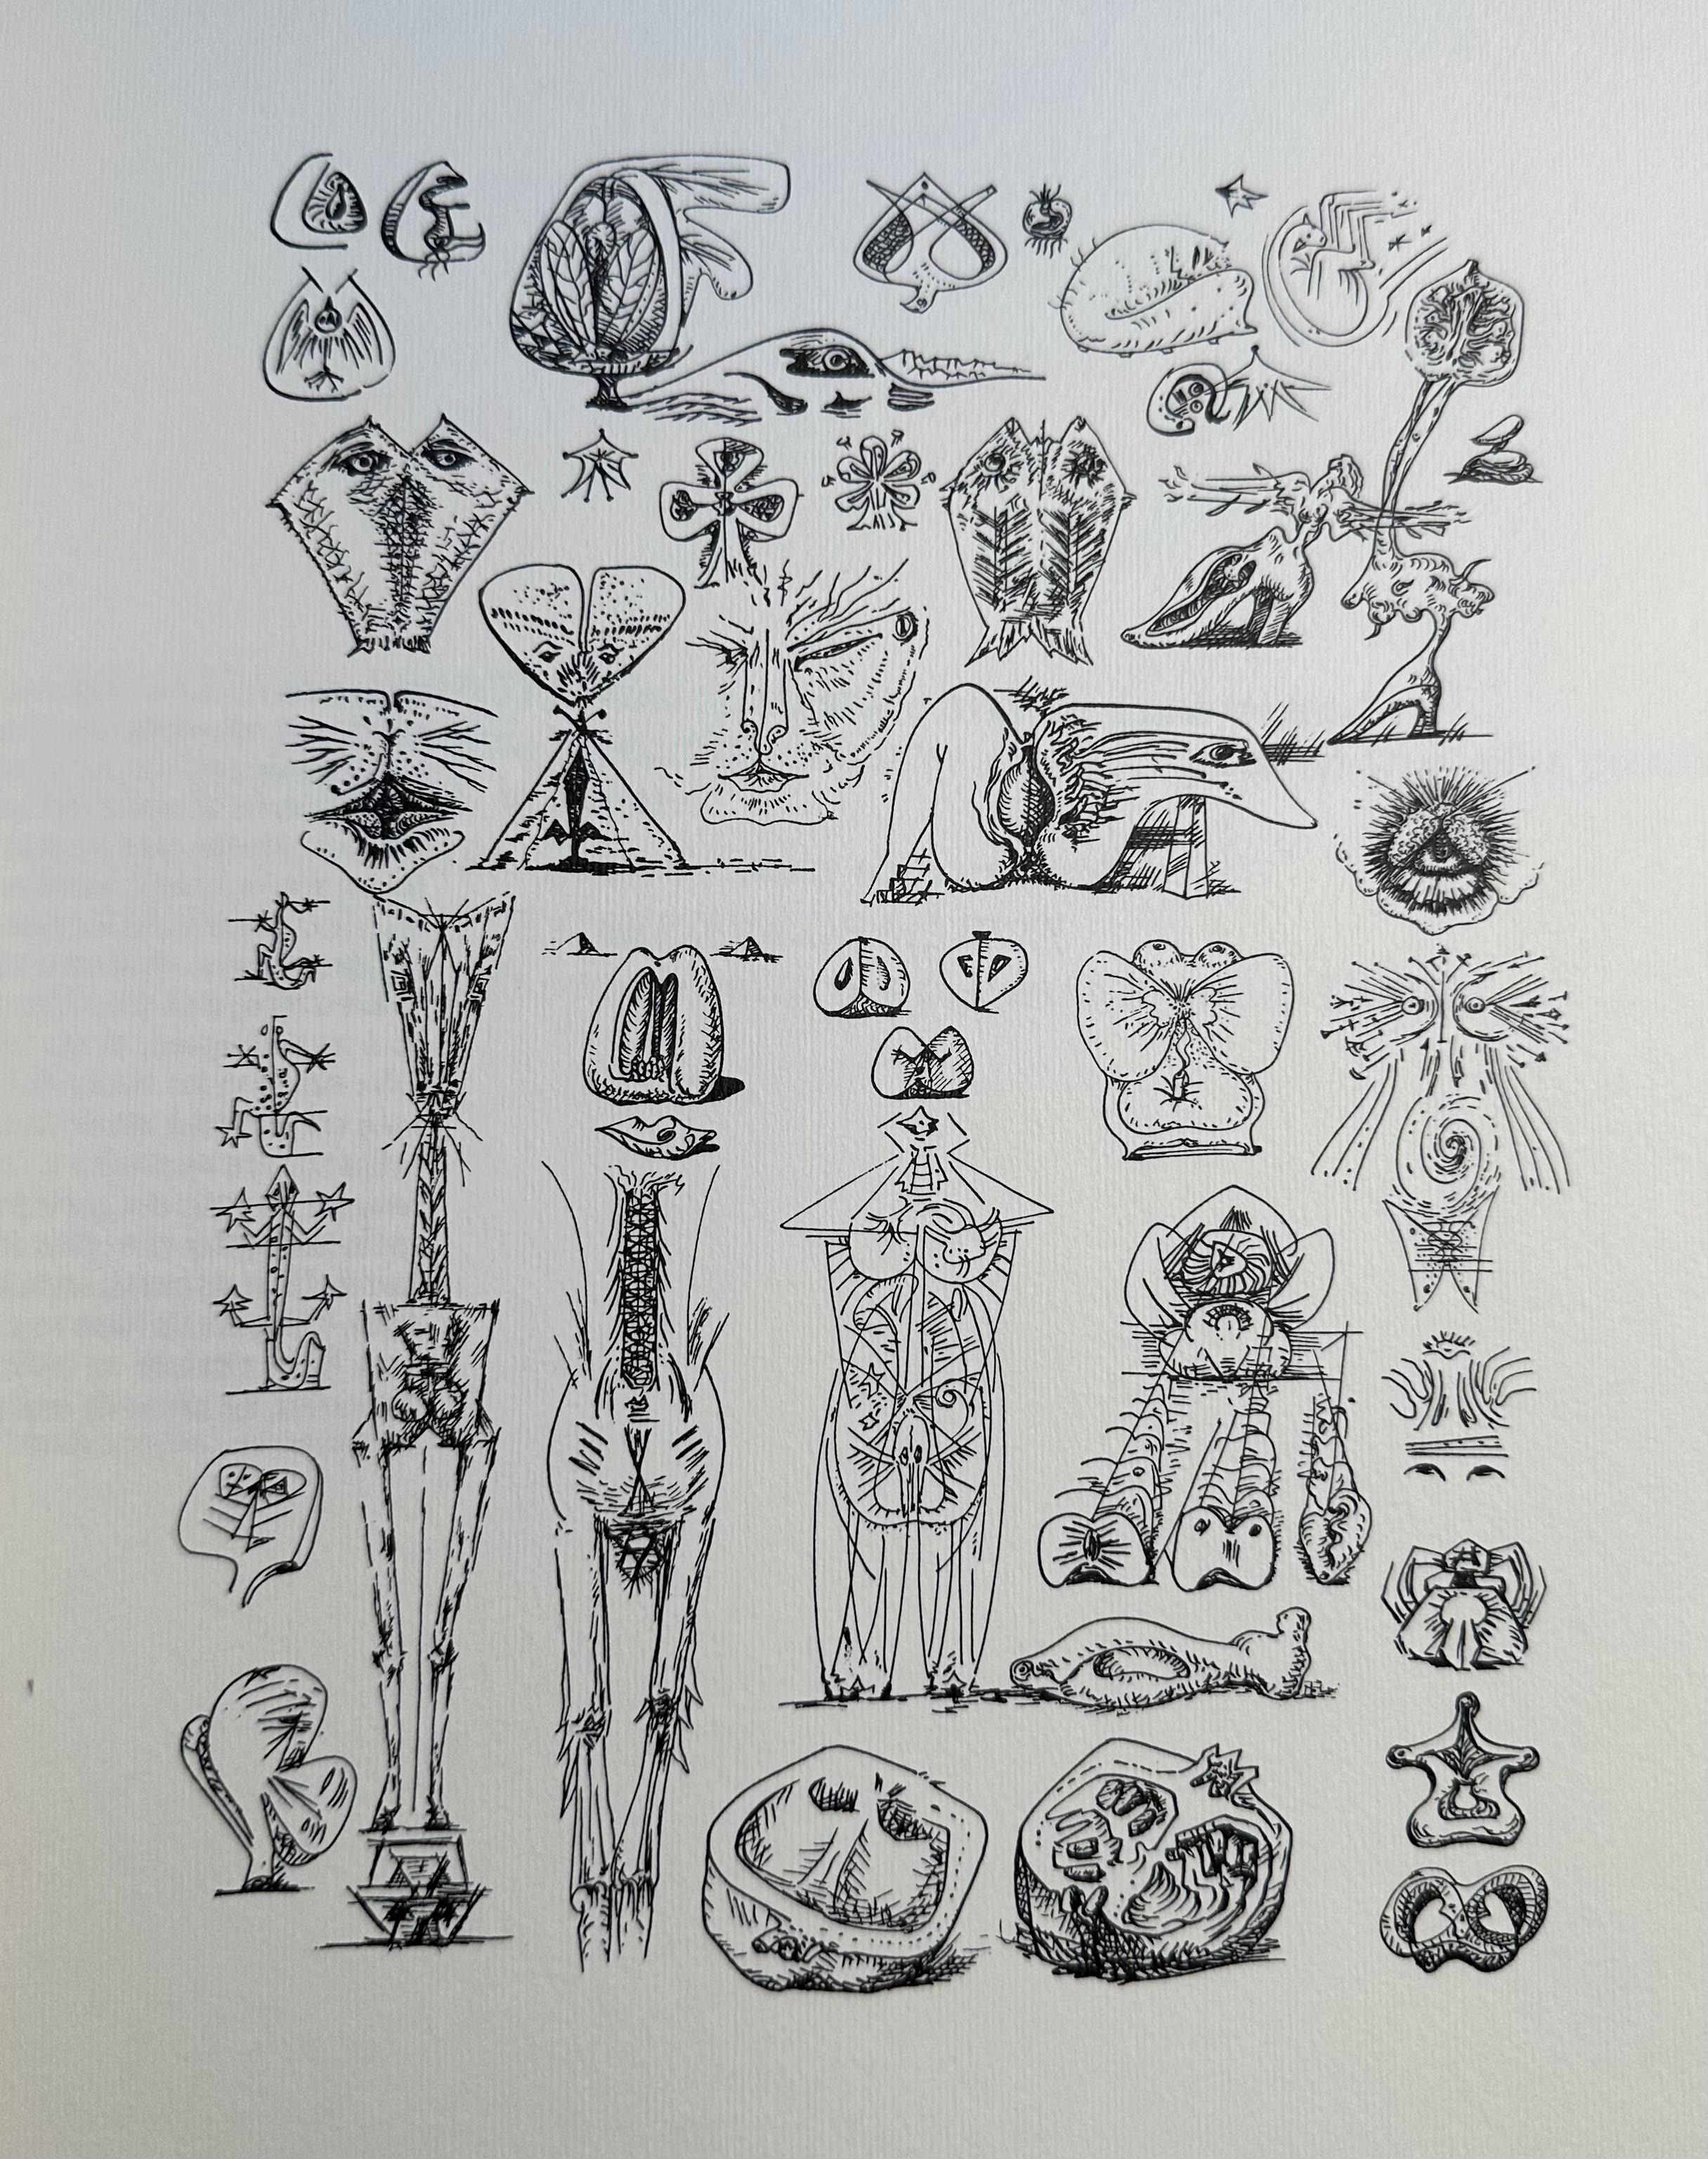 Réimpression du livre d'Andre Masson de 1939.  Imprimé sur du papier vélin épais.  30 planches de dessins en noir et blanc.